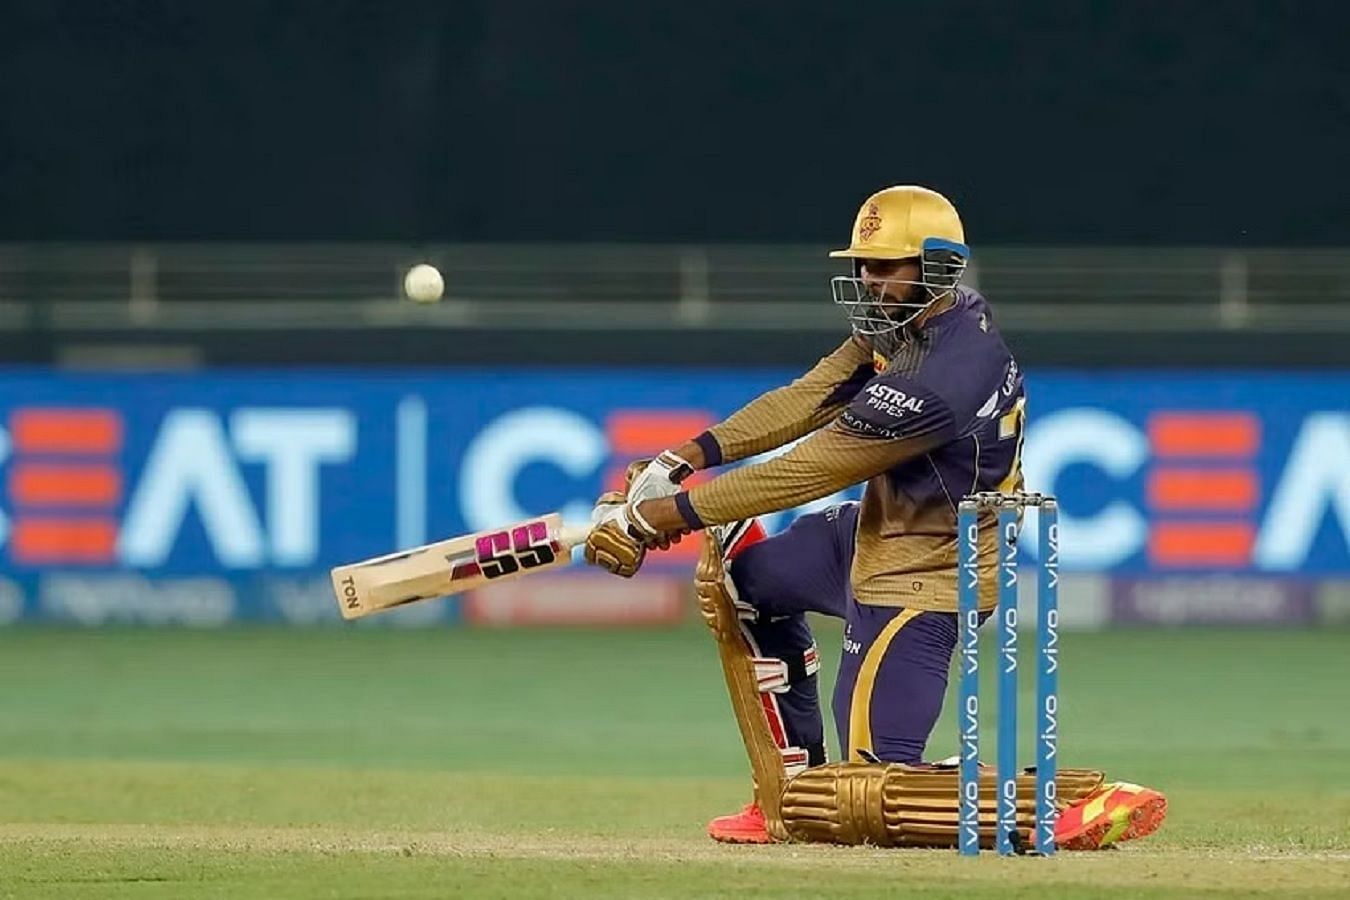 वेंकटेश अय्यर ने गुजरात टाइटंस के खिलाफ 83 रन की उम्&zwj;दा पारी खेली